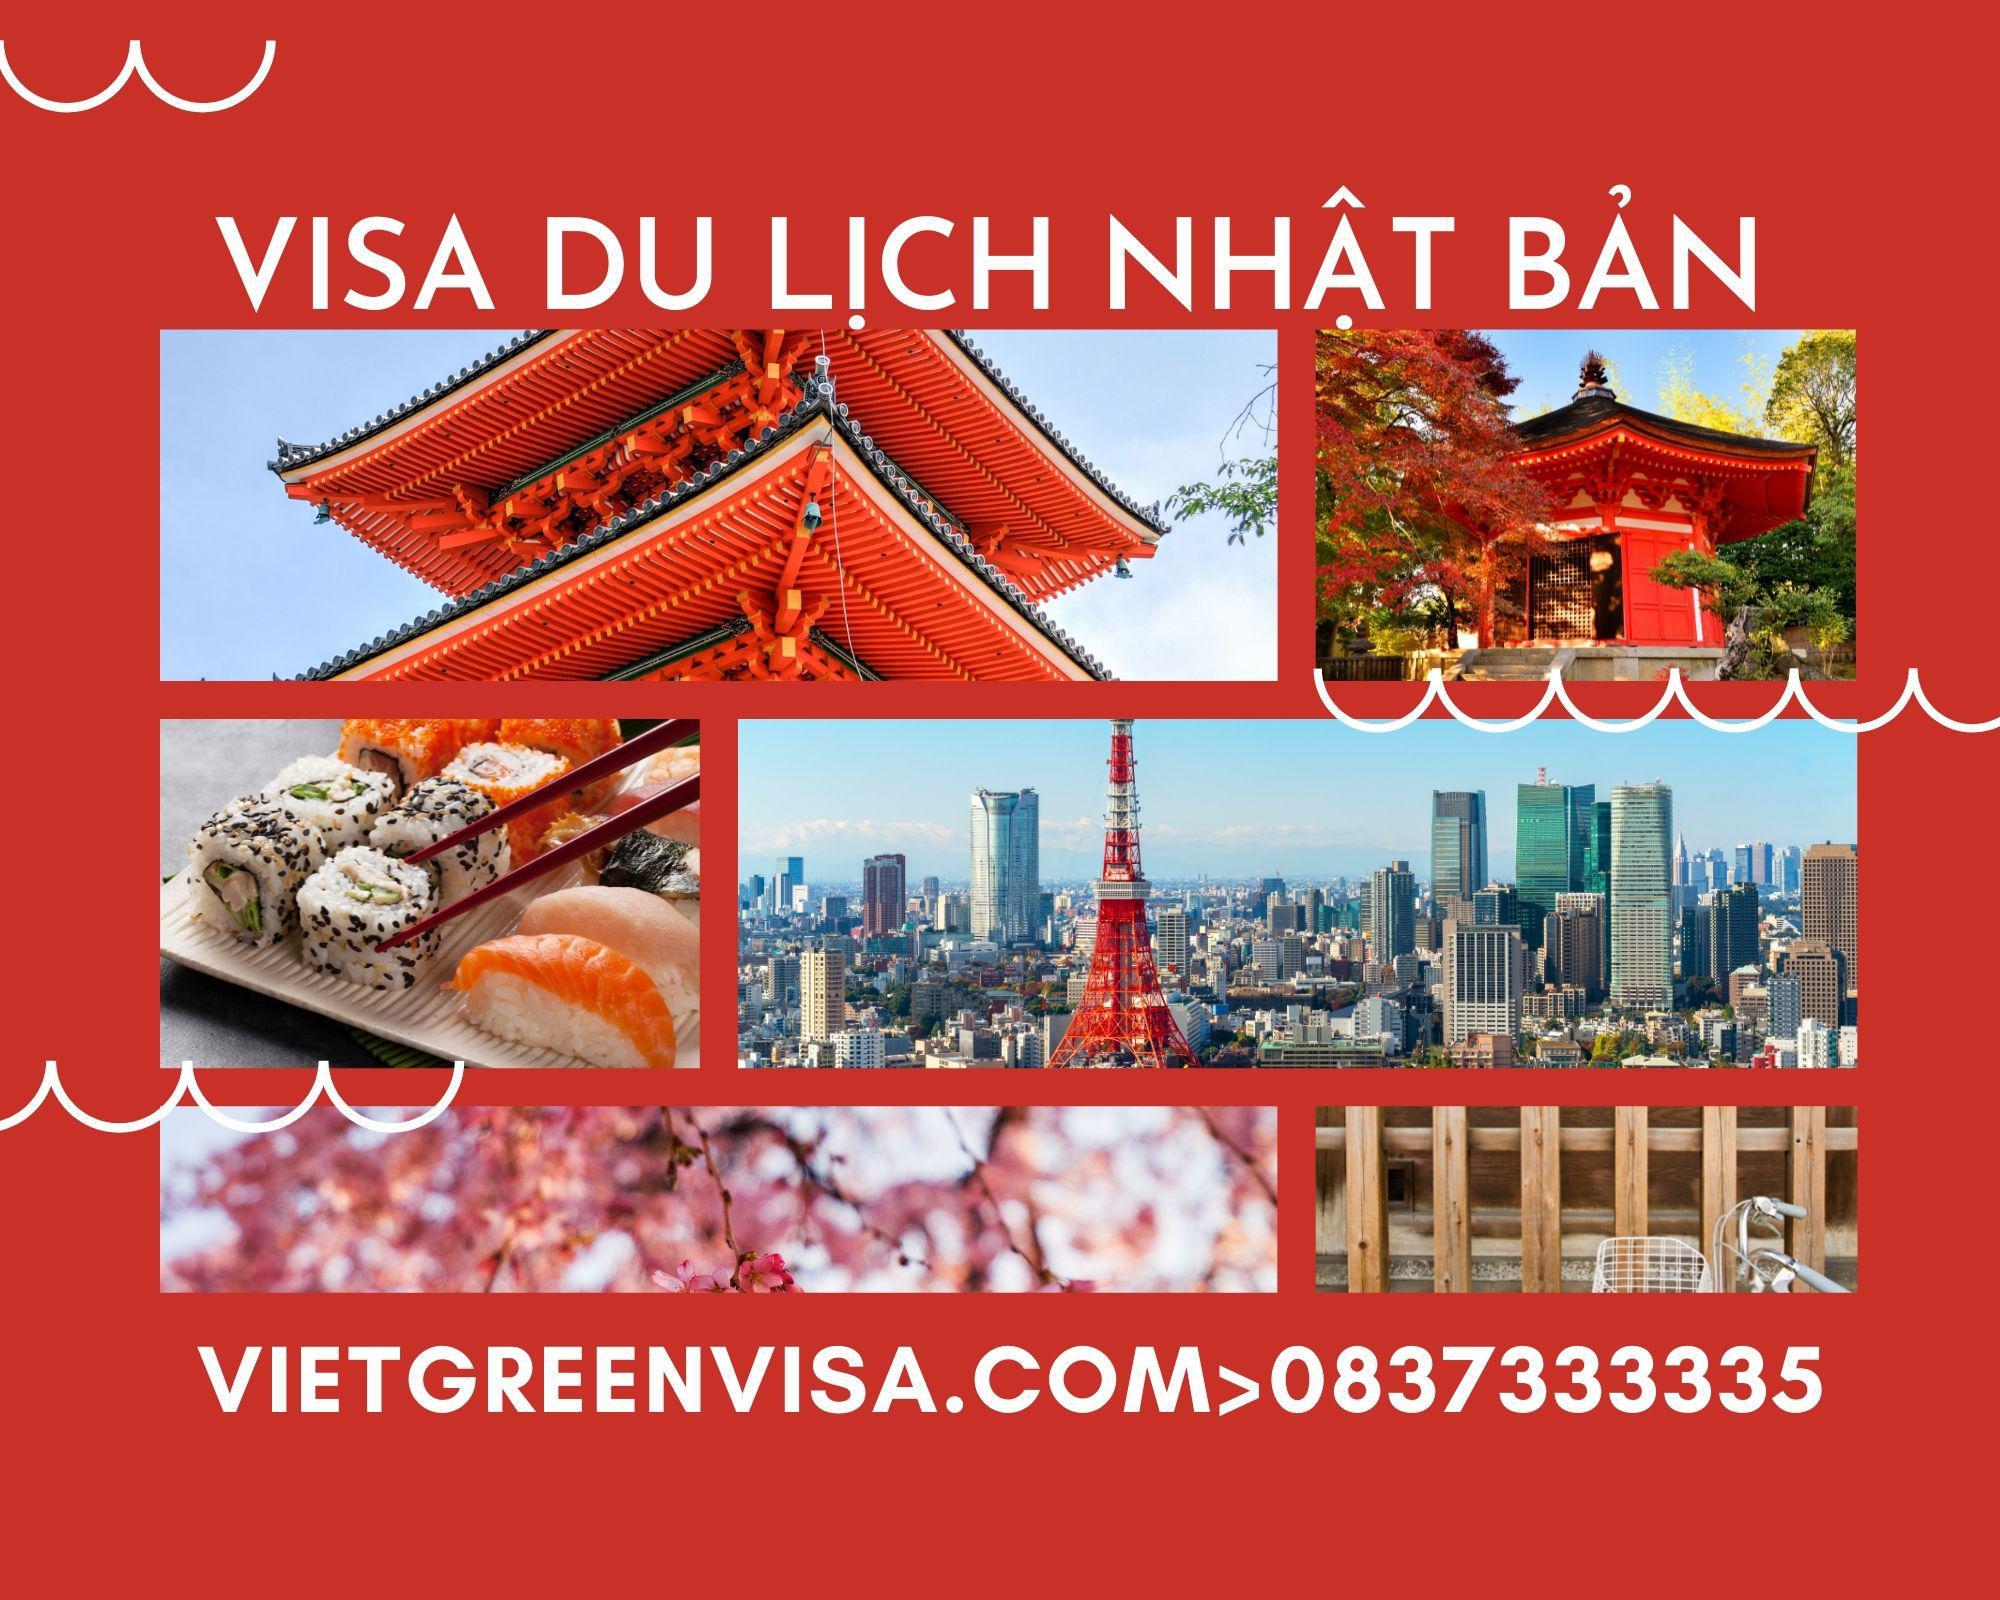 Làm Visa du lịch Nhật Bản uy tín, trọn gói, giá rẻ